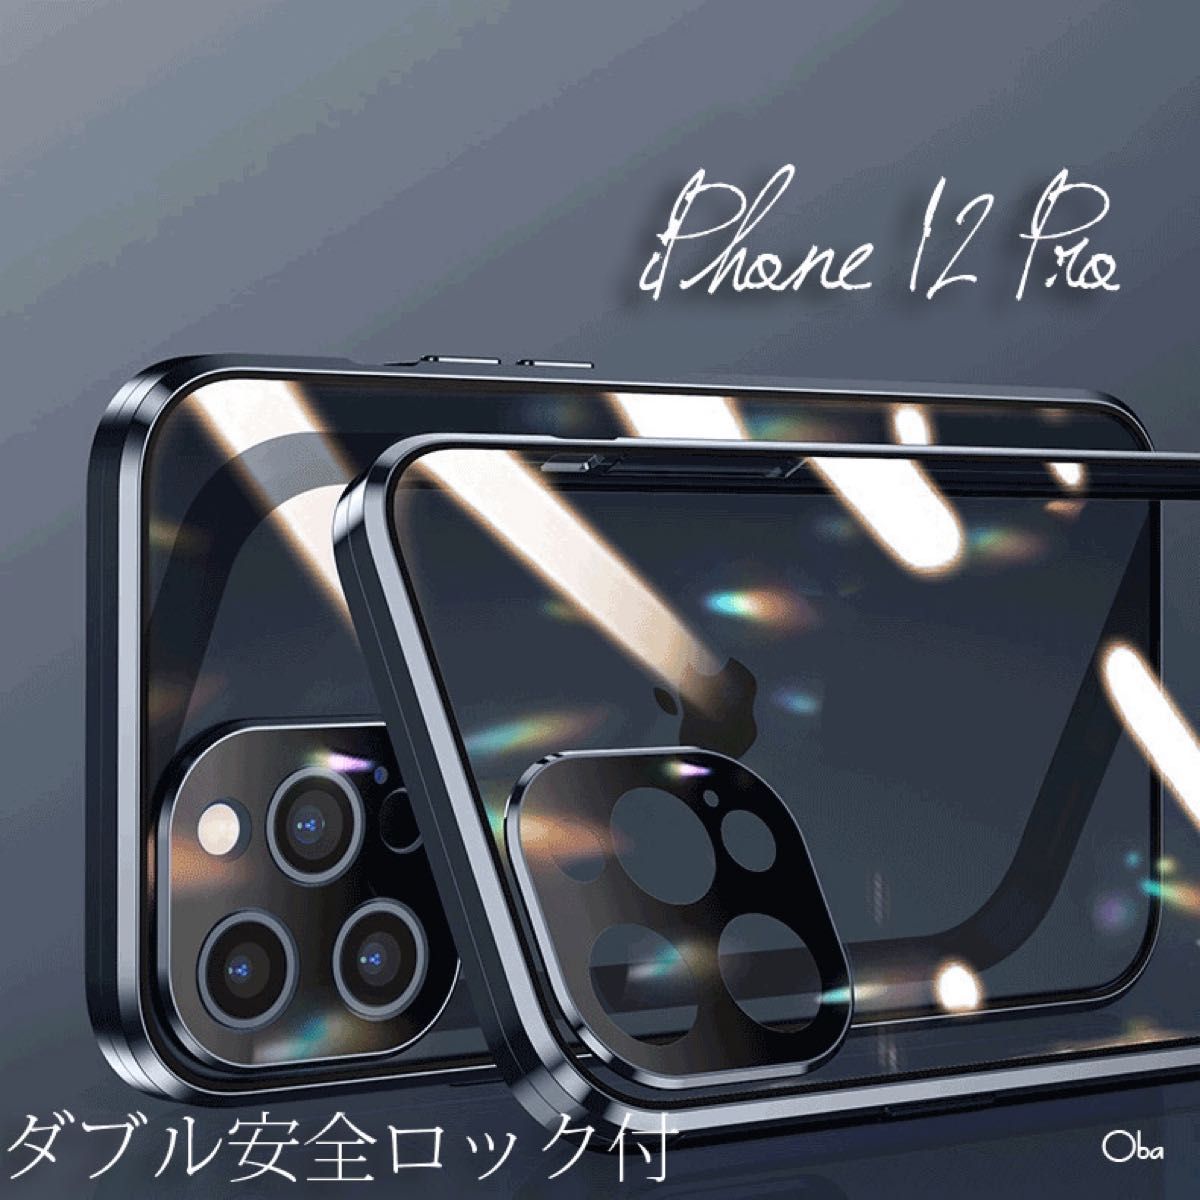 ダブルロック ブラック  iPhone 12 Pro ケース アルミ合金 レンズ保護一体 両面ガラスケース oba